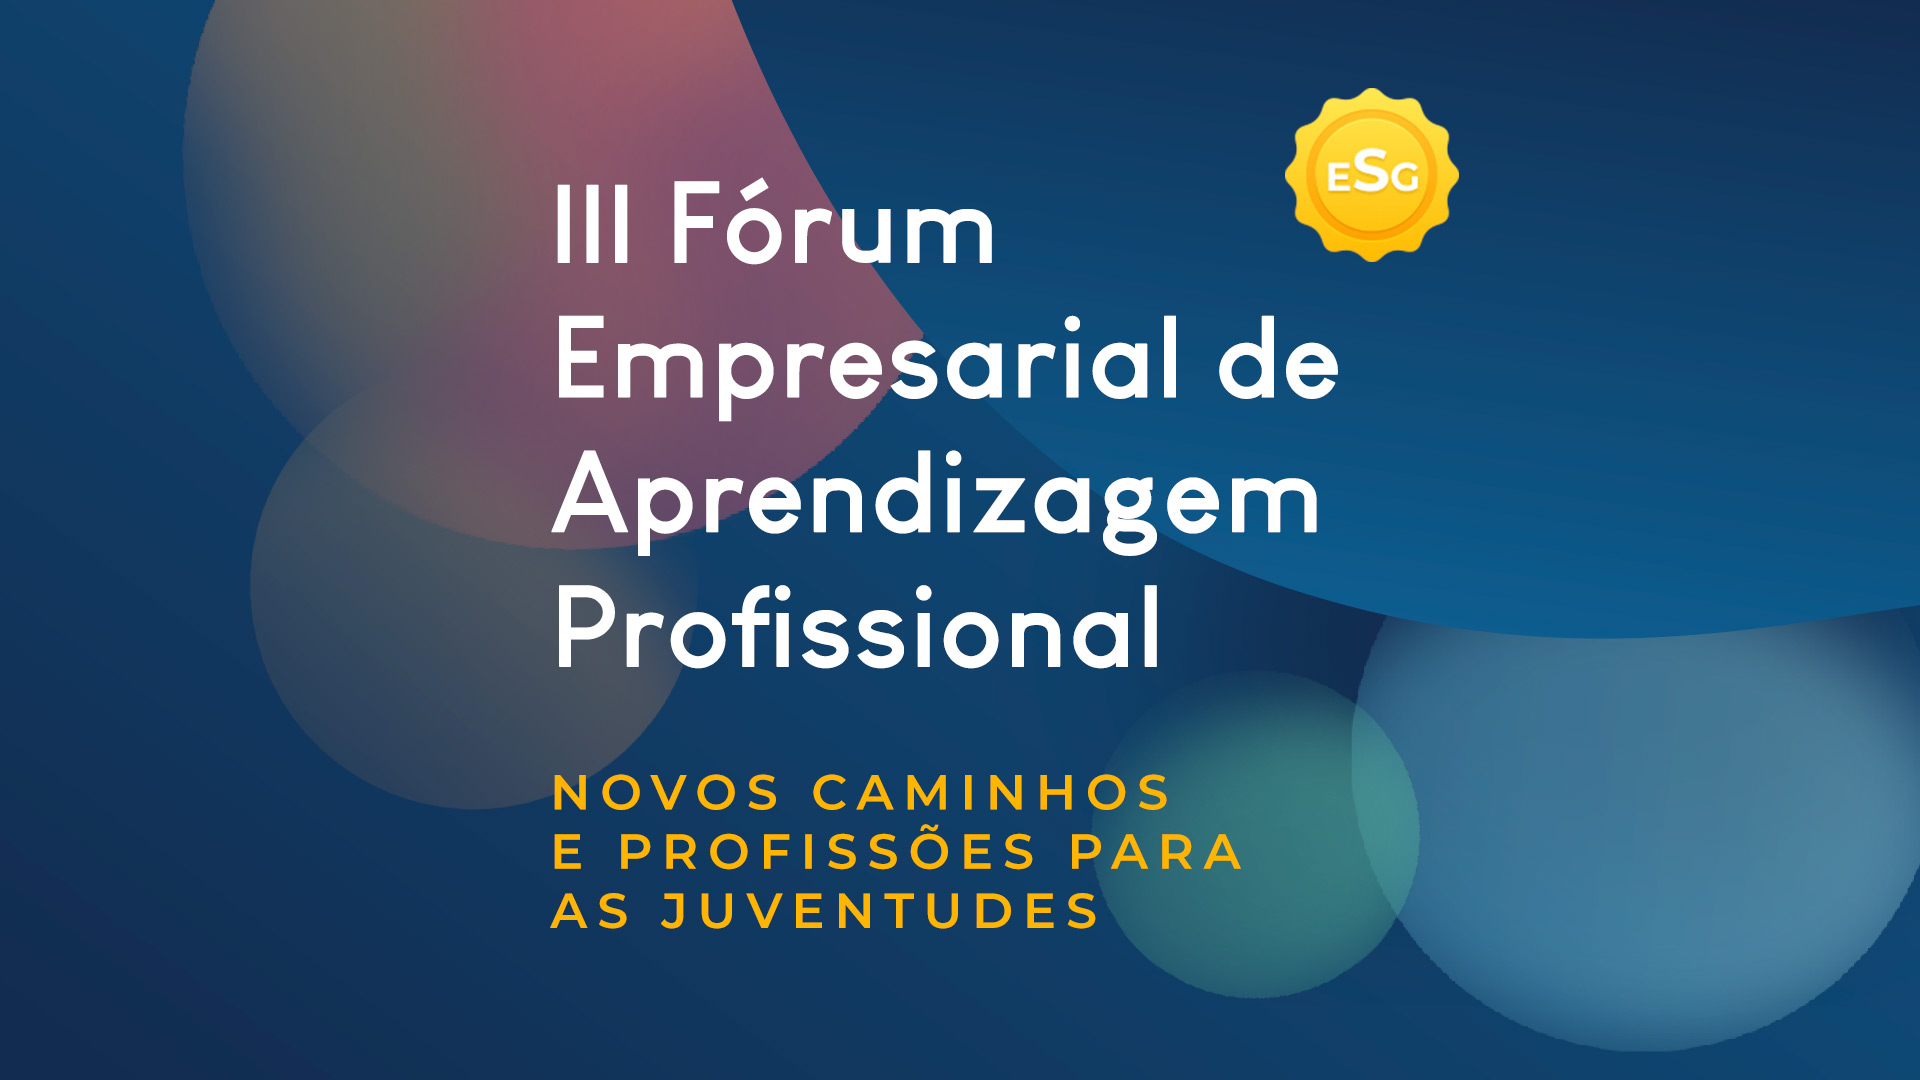 Arte gráfica com fundo azul com destaque para o nome e tema do evento: III Fórum Empresarial de Aprendizagem Profissional - Novos Caminhos e Profissões para Juventudes